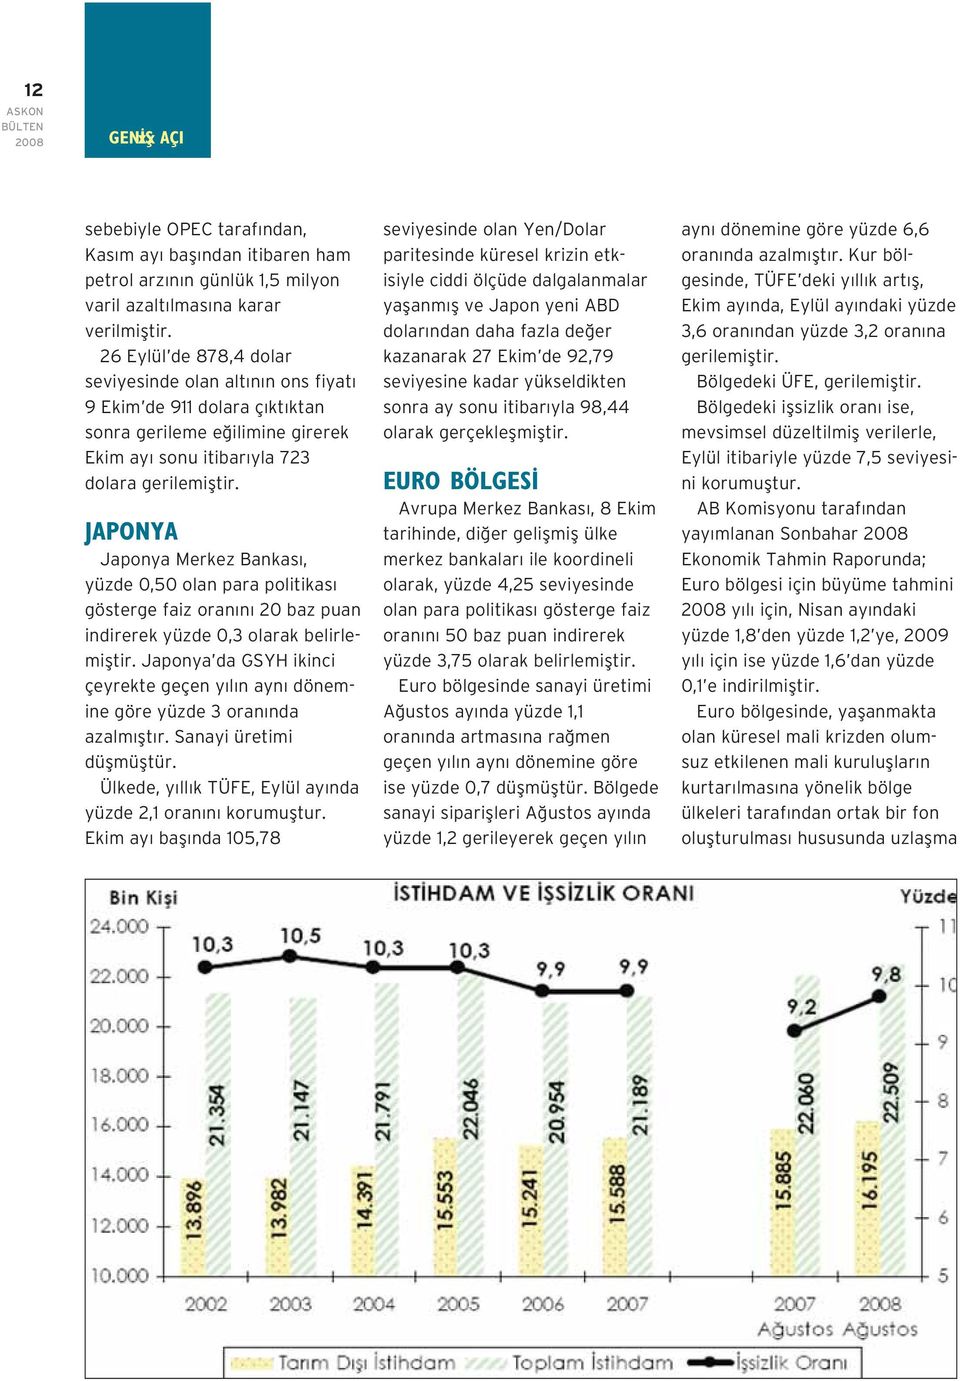 JAPONYA Japonya Merkez Bankas, yüzde 0,50 olan para politikas gösterge faiz oran n 20 baz puan indirerek yüzde 0,3 olarak belirlemifltir.